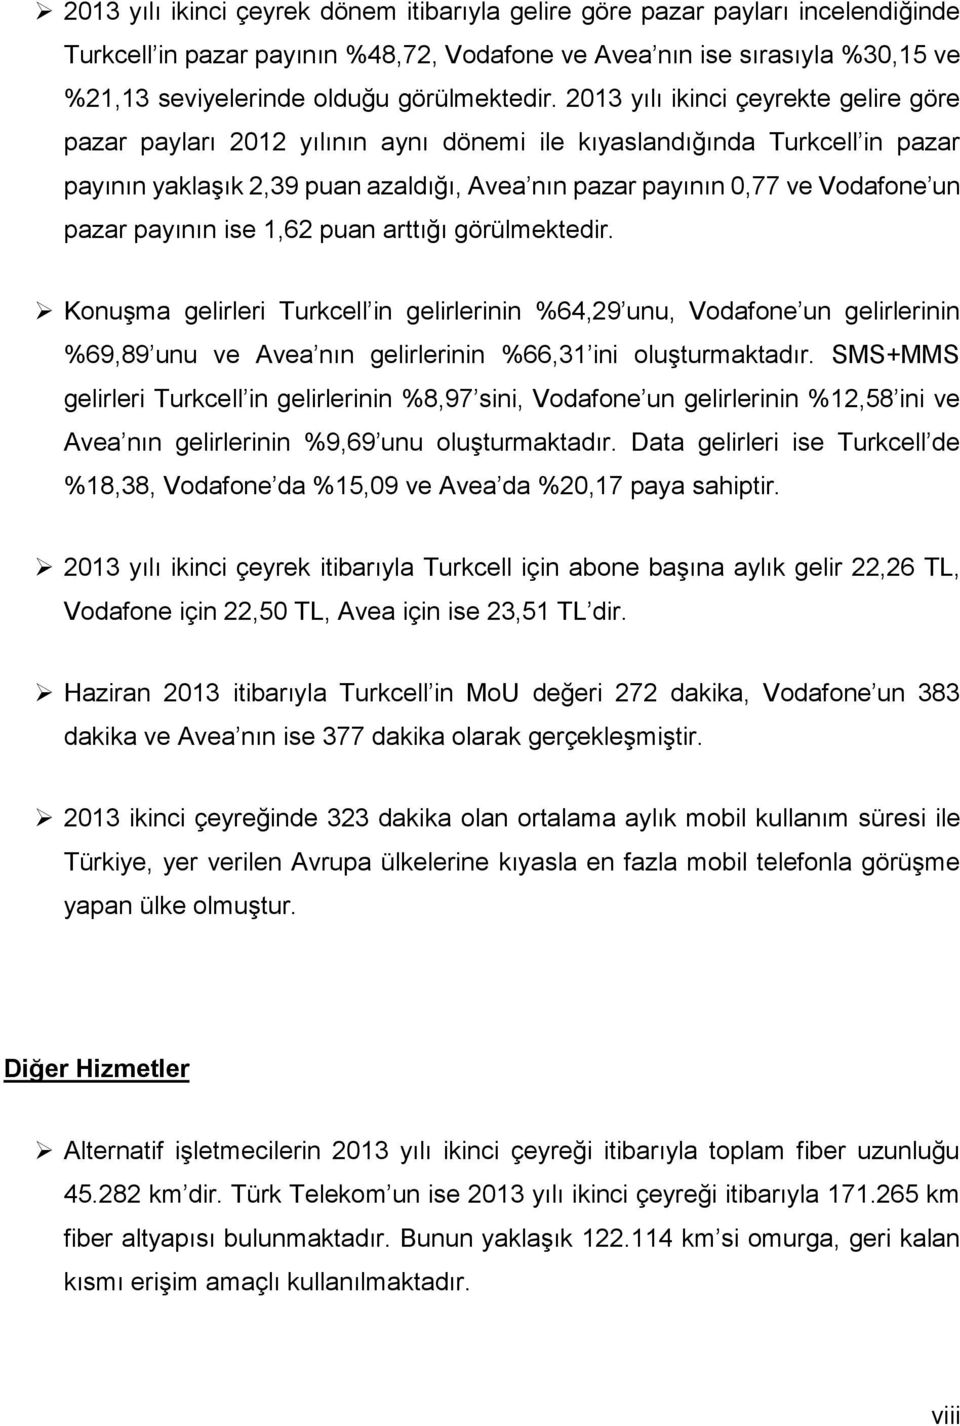 213 yılı ikinci çeyrekte gelire göre pazar payları 212 yılının aynı dönemi ile kıyaslandığında Turkcell in pazar payının yaklaşık 2,39 puan azaldığı, Avea nın pazar payının,77 ve Vodafone un pazar